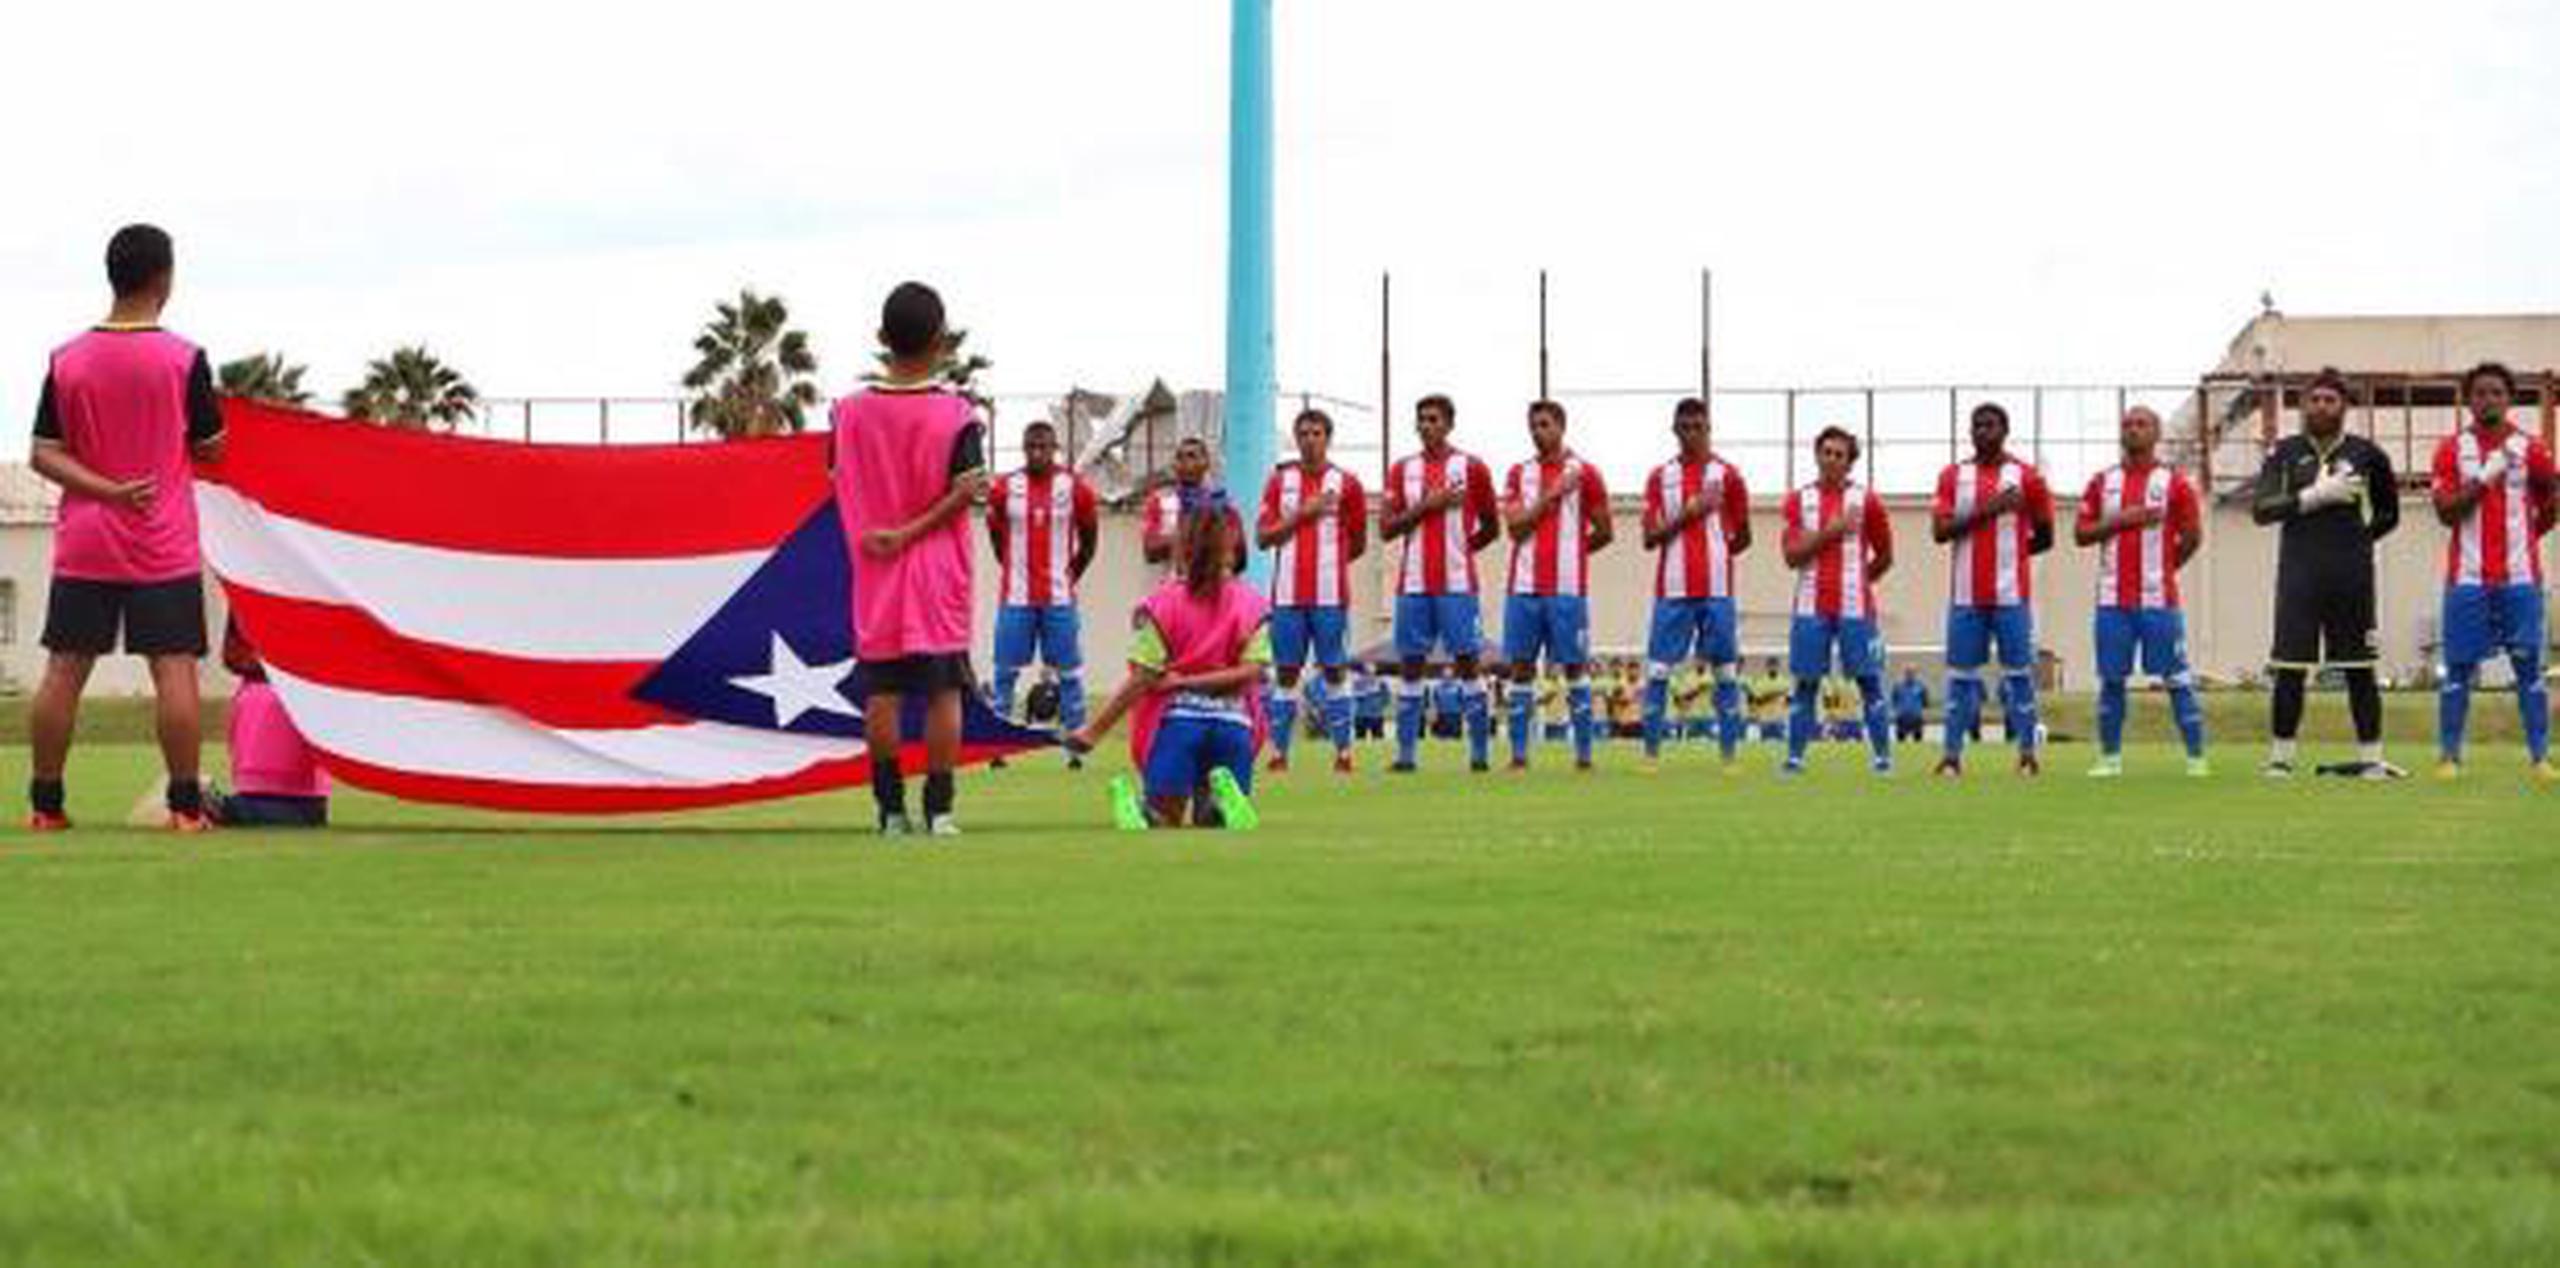 El encuentro en Honduras sirve de preparación para el desafío del 10 de septiembre en la Liga C de la Liga de Naciones de Concacaf, donde Puerto Rico recibirá la visita de Guatemala a las 9:00 p.m. en el Estadio Centroamericano de Mayagüez. (Suministrada)